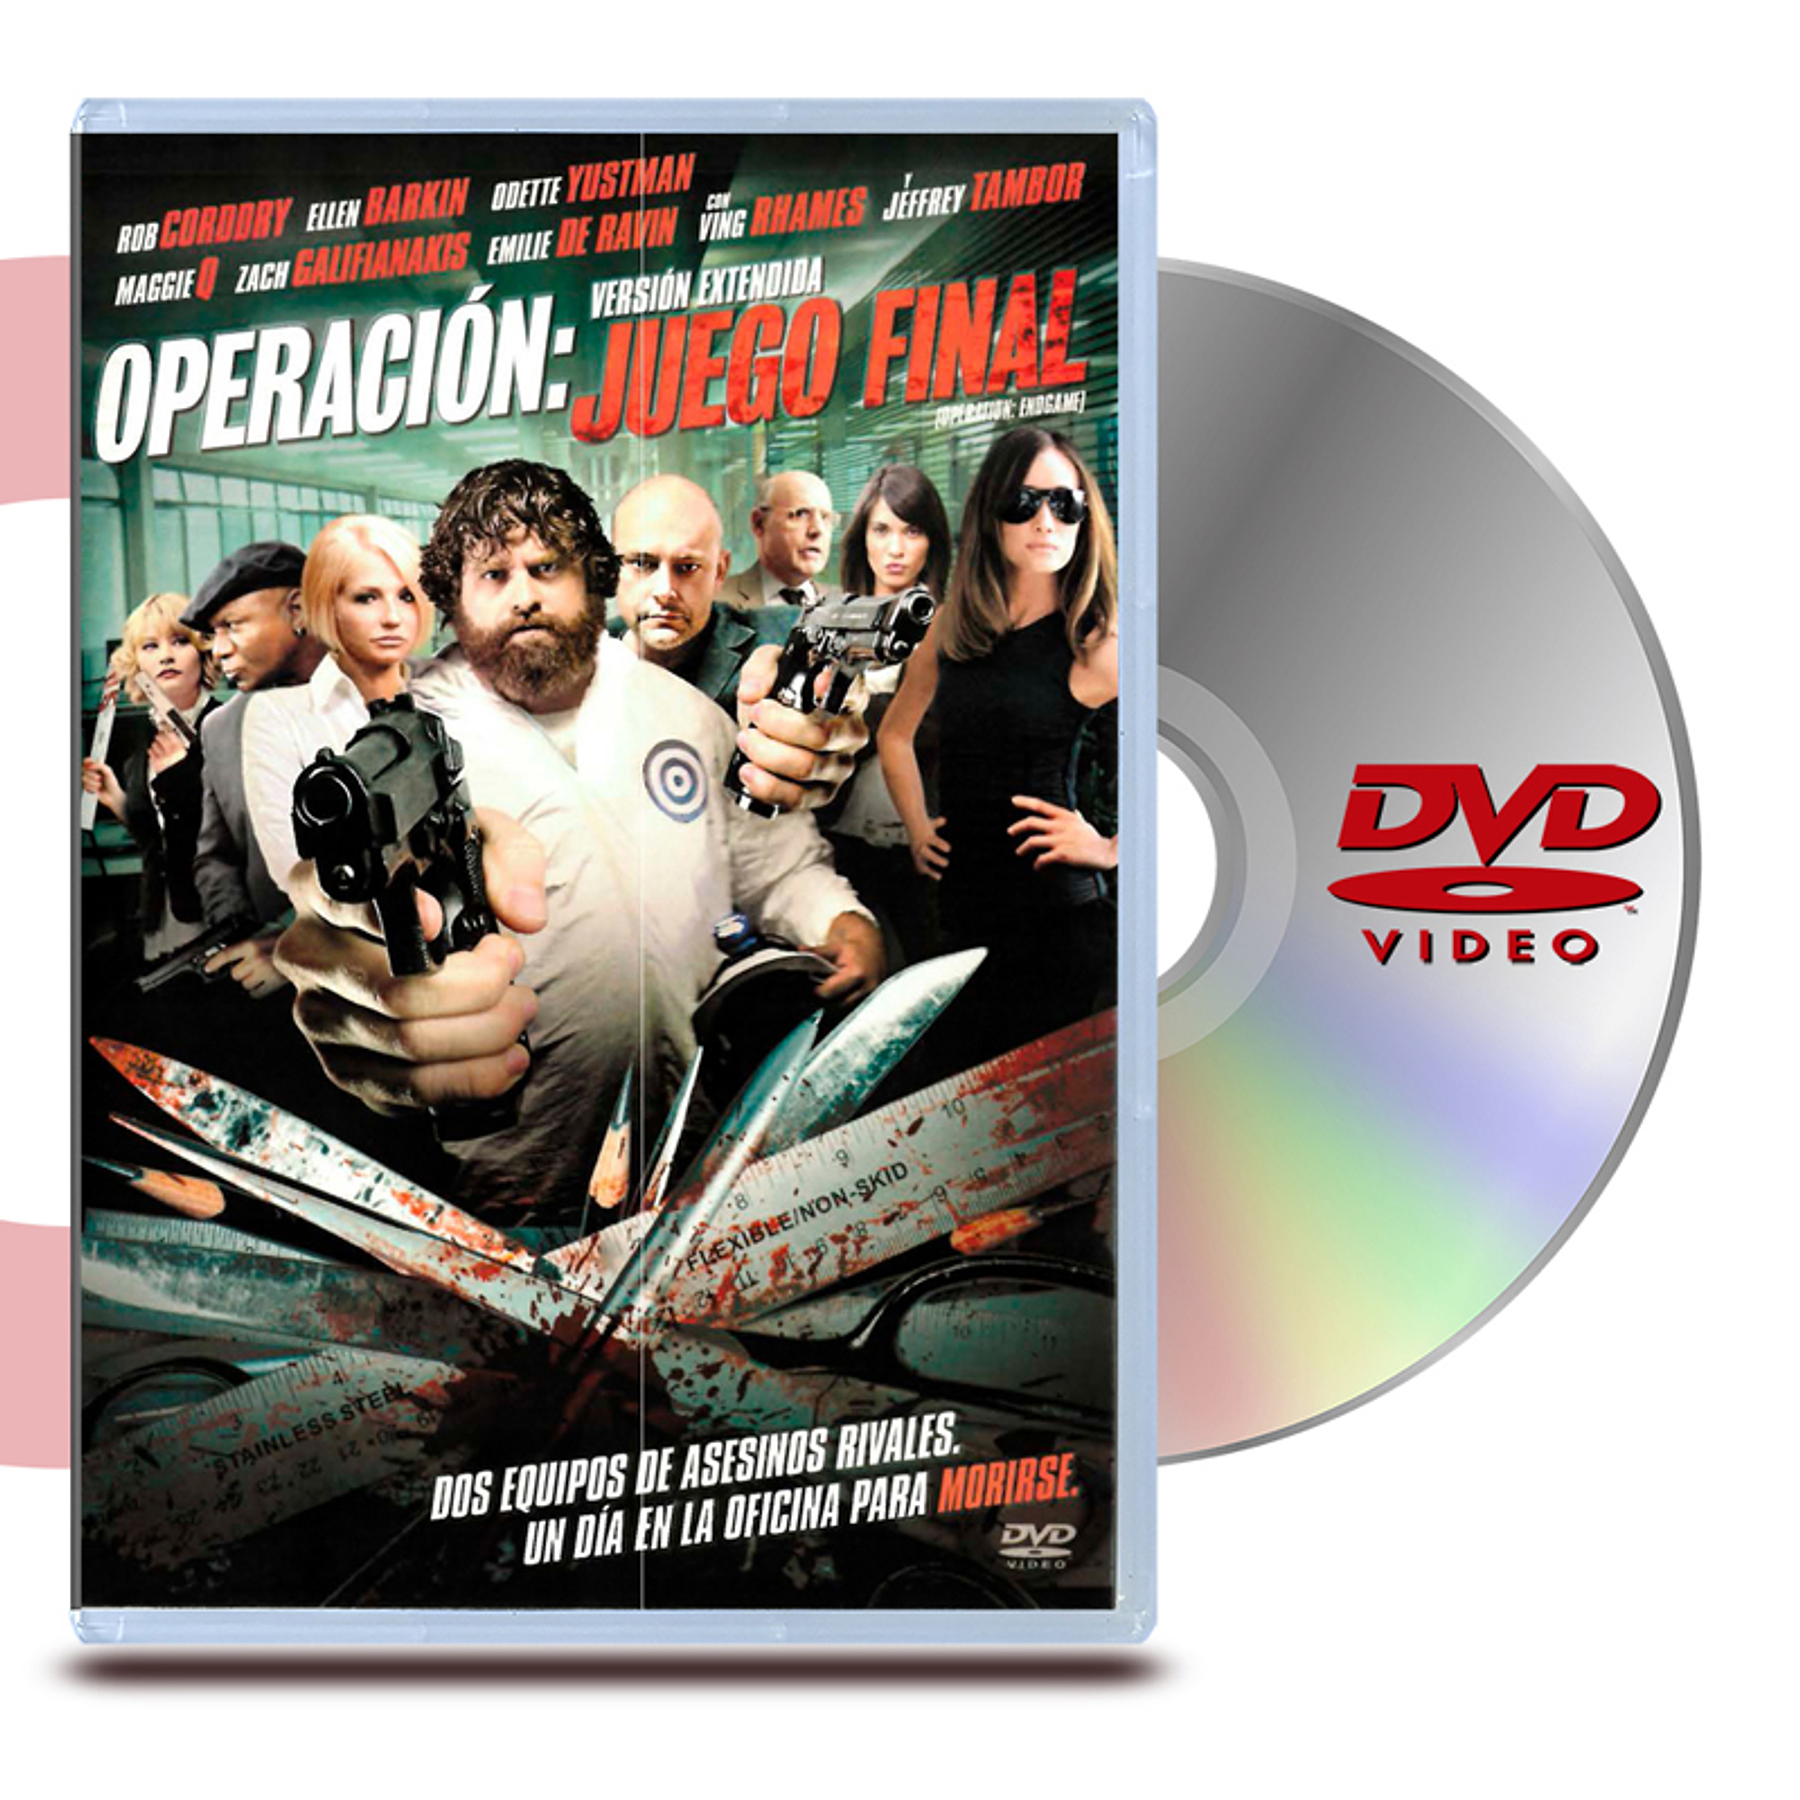 DVD OPERACIÓN: JUEGO FINAL